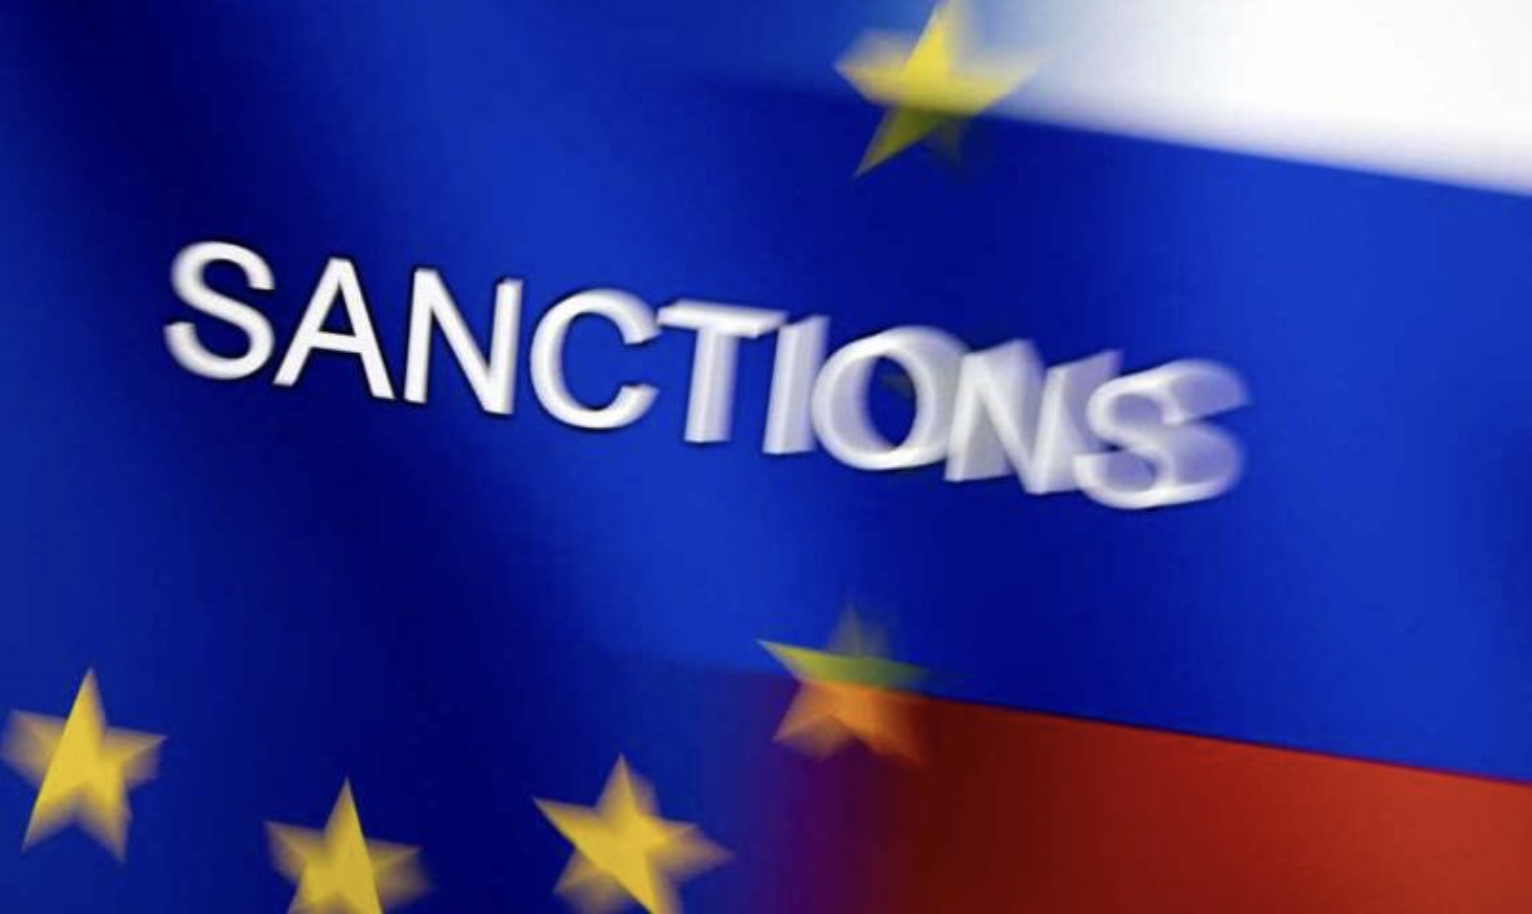 L’UE joue un rôle subordonné aux intérêts américains depuis le début du conflit russo-ukrainien (député européen)